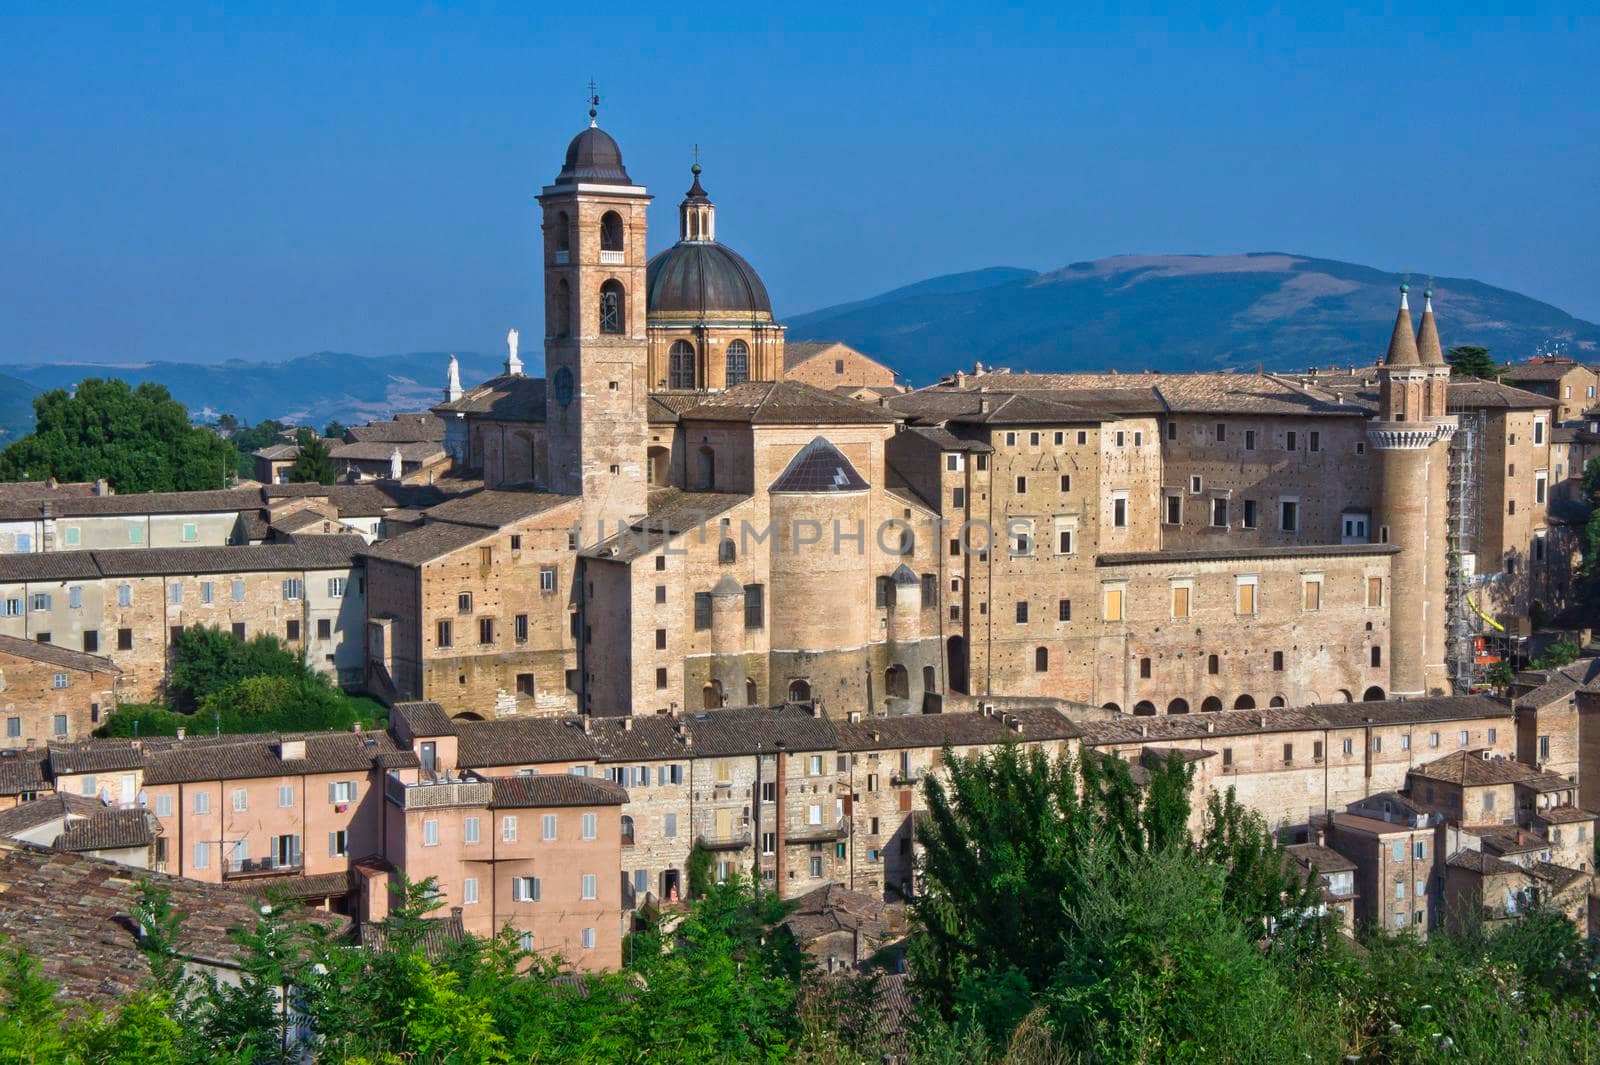 Urbino, Old city panoramic view, Italy, Europe